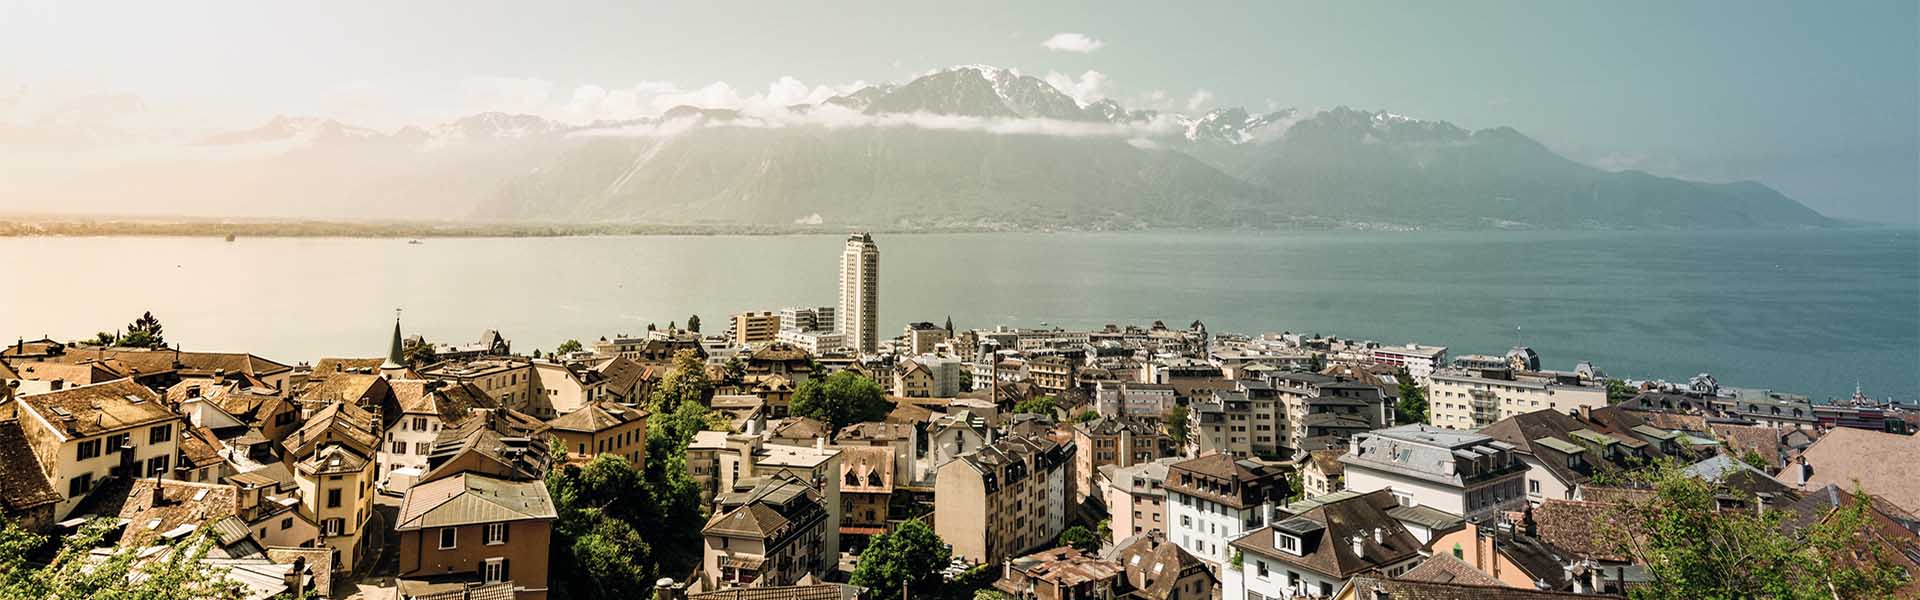 Top Escort Schweiz | Escort Montreux